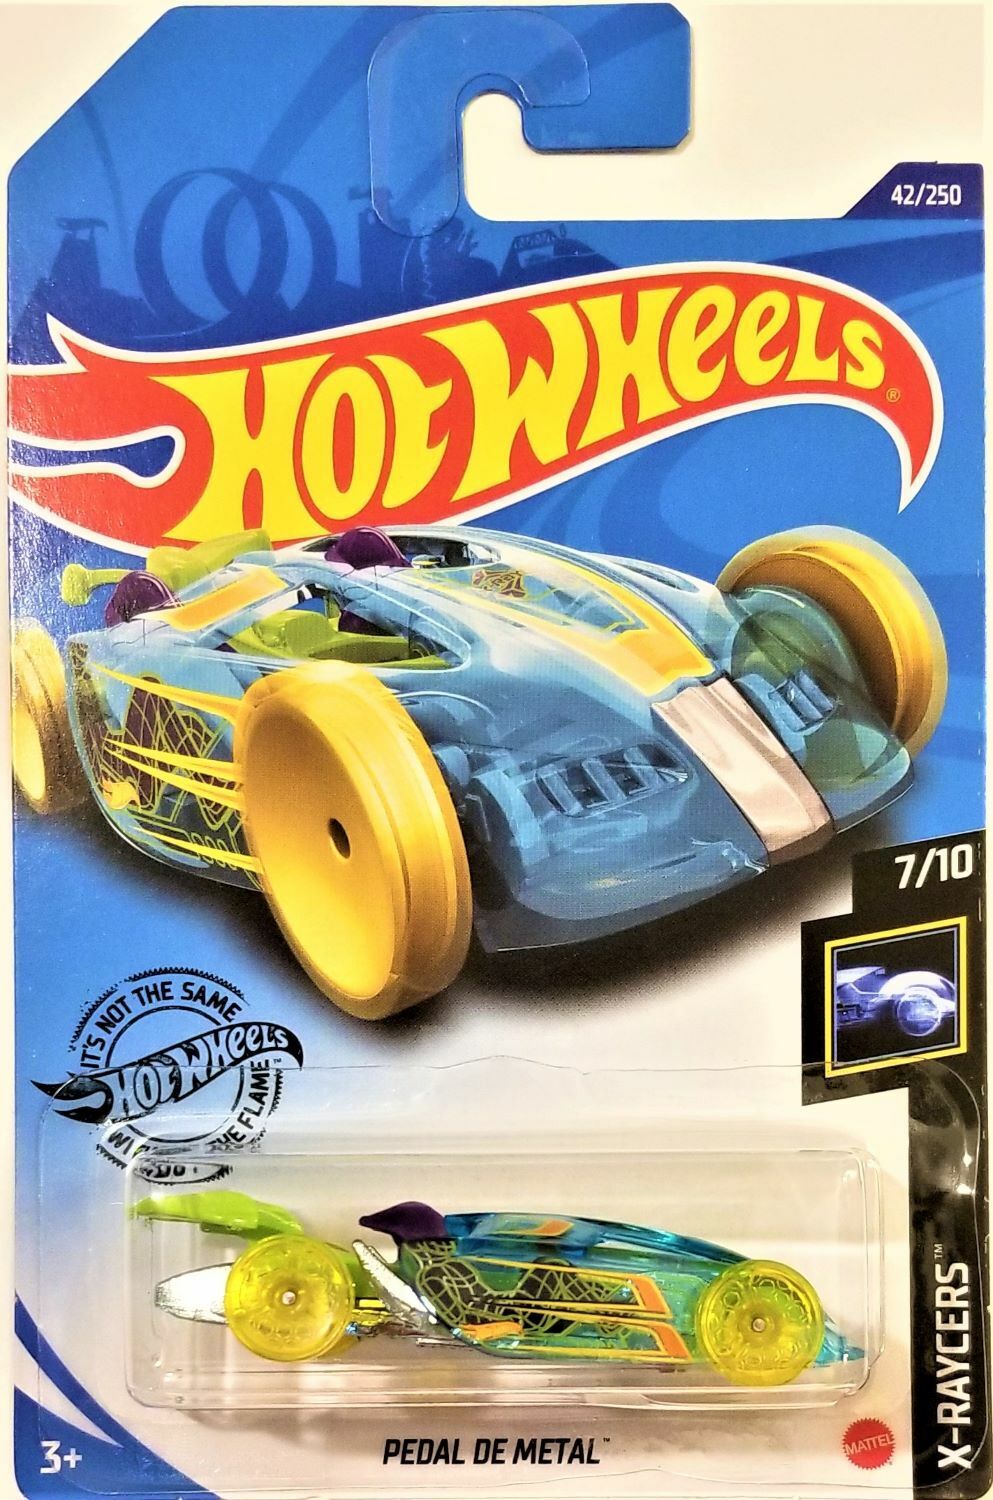 Hot Wheels Pedal De Metal,  X-Racers 7/10, 42/250